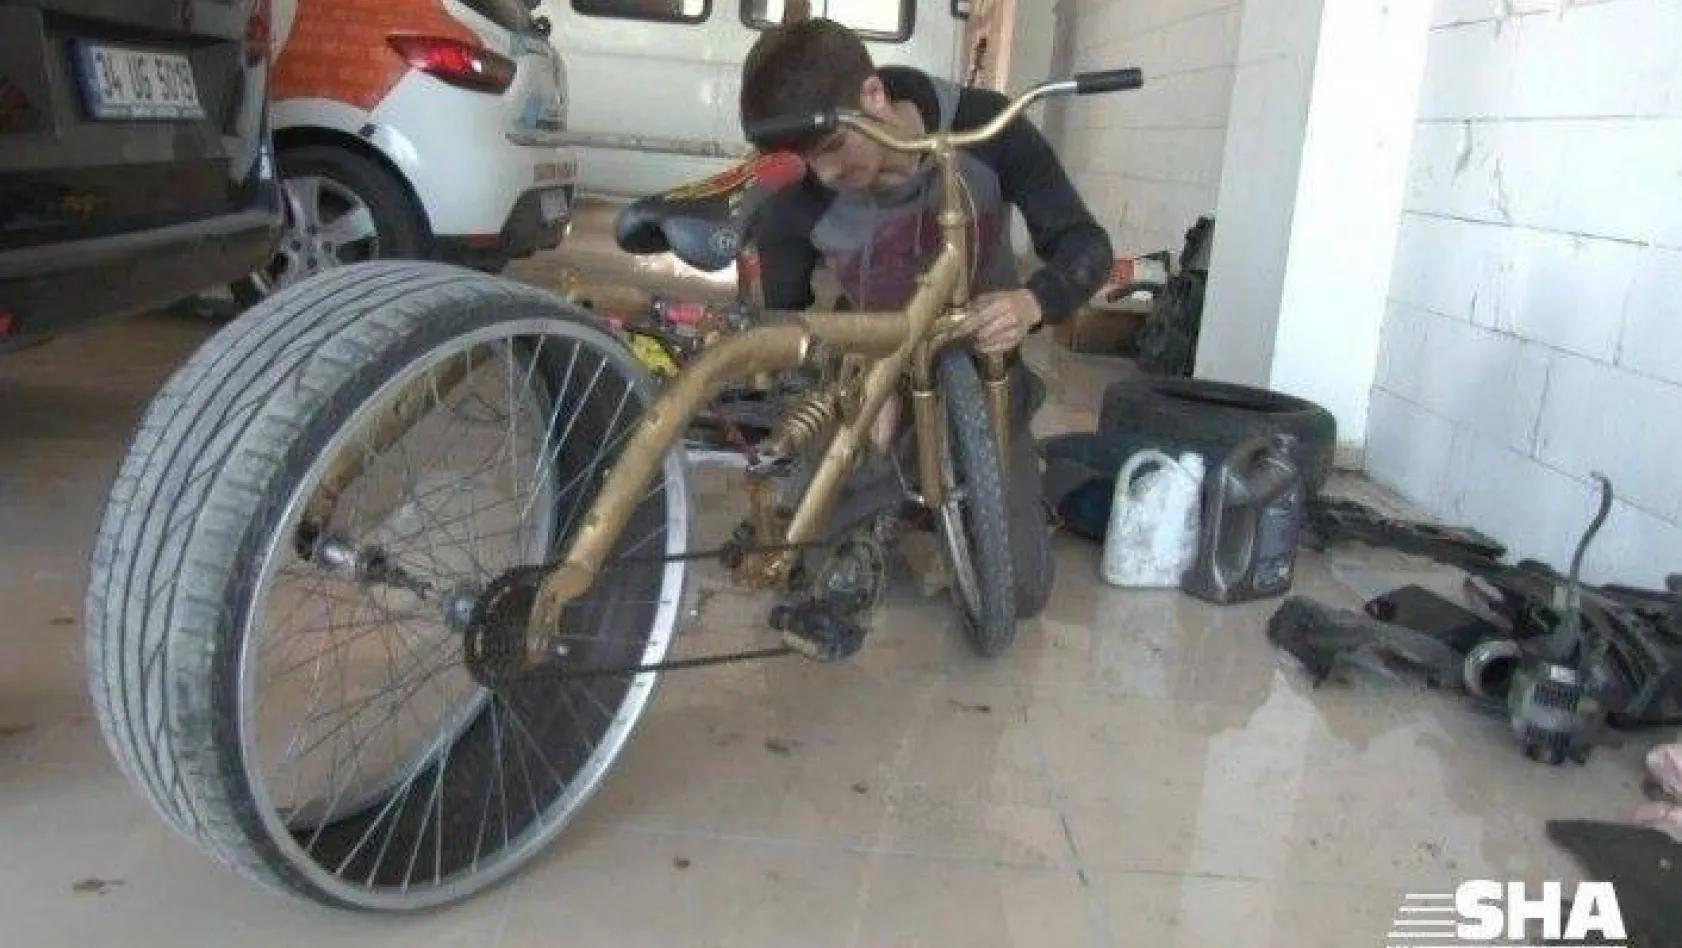 (Özel) Lastiği sürekli patlayan bisikletine çözümü otomobil lastiğinde buldu